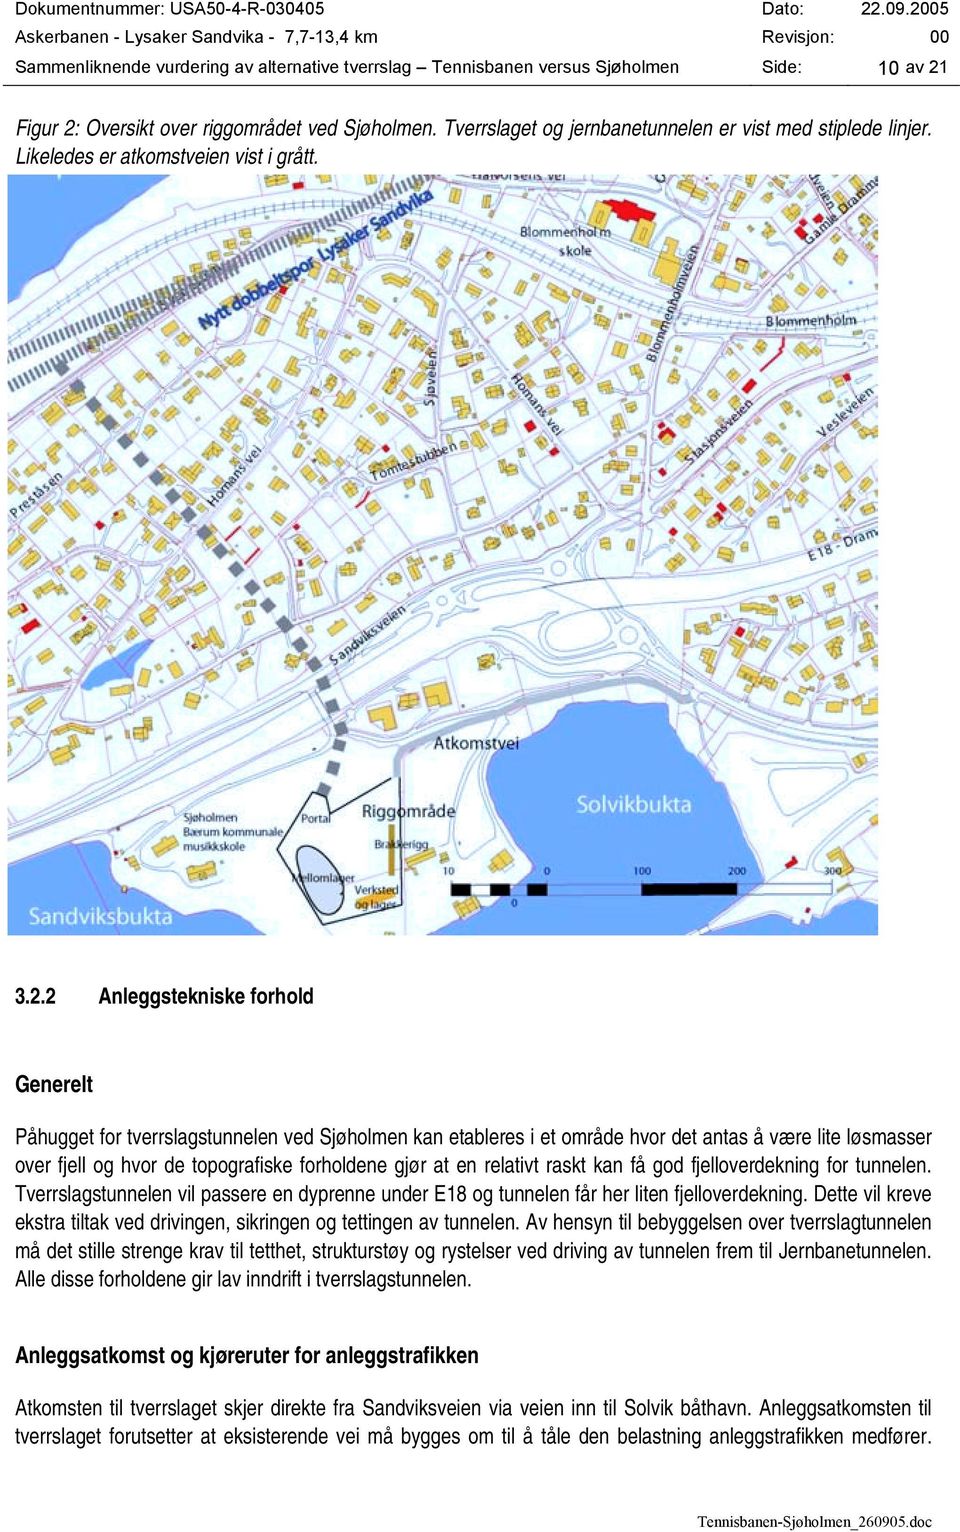 2 Anleggstekniske forhold Generelt Påhugget for tverrslagstunnelen ved Sjøholmen kan etableres i et område hvor det antas å være lite løsmasser over fjell og hvor de topografiske forholdene gjør at